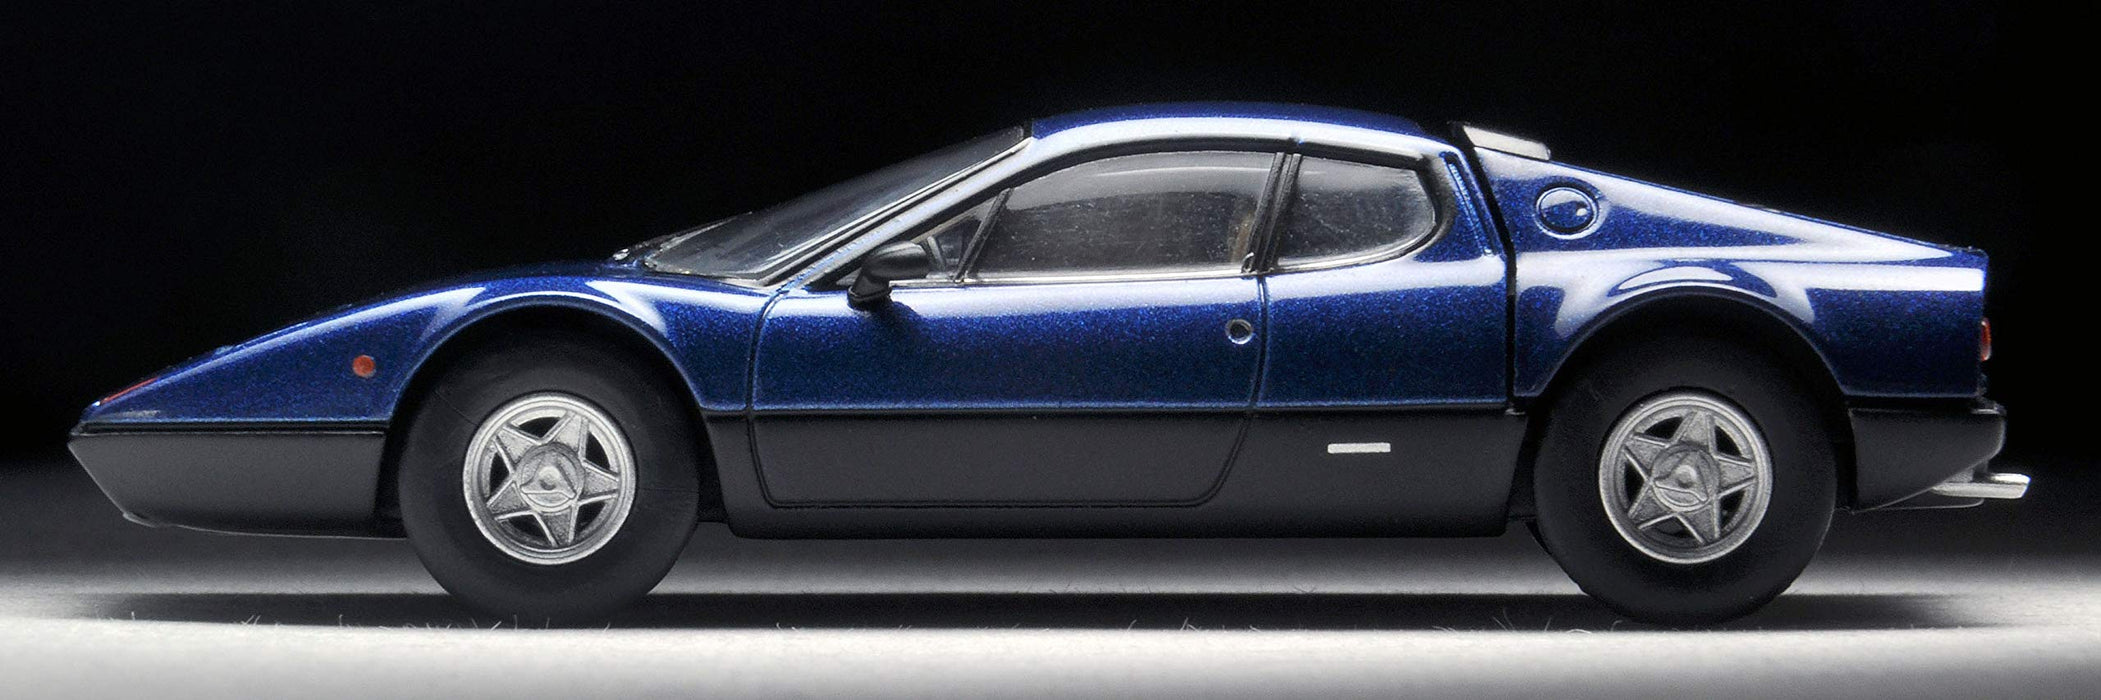 Tomytec Tomica Limited Vintage Neo Ferrari 365 GT4 BB Blue/Black 1/64 Scale Model